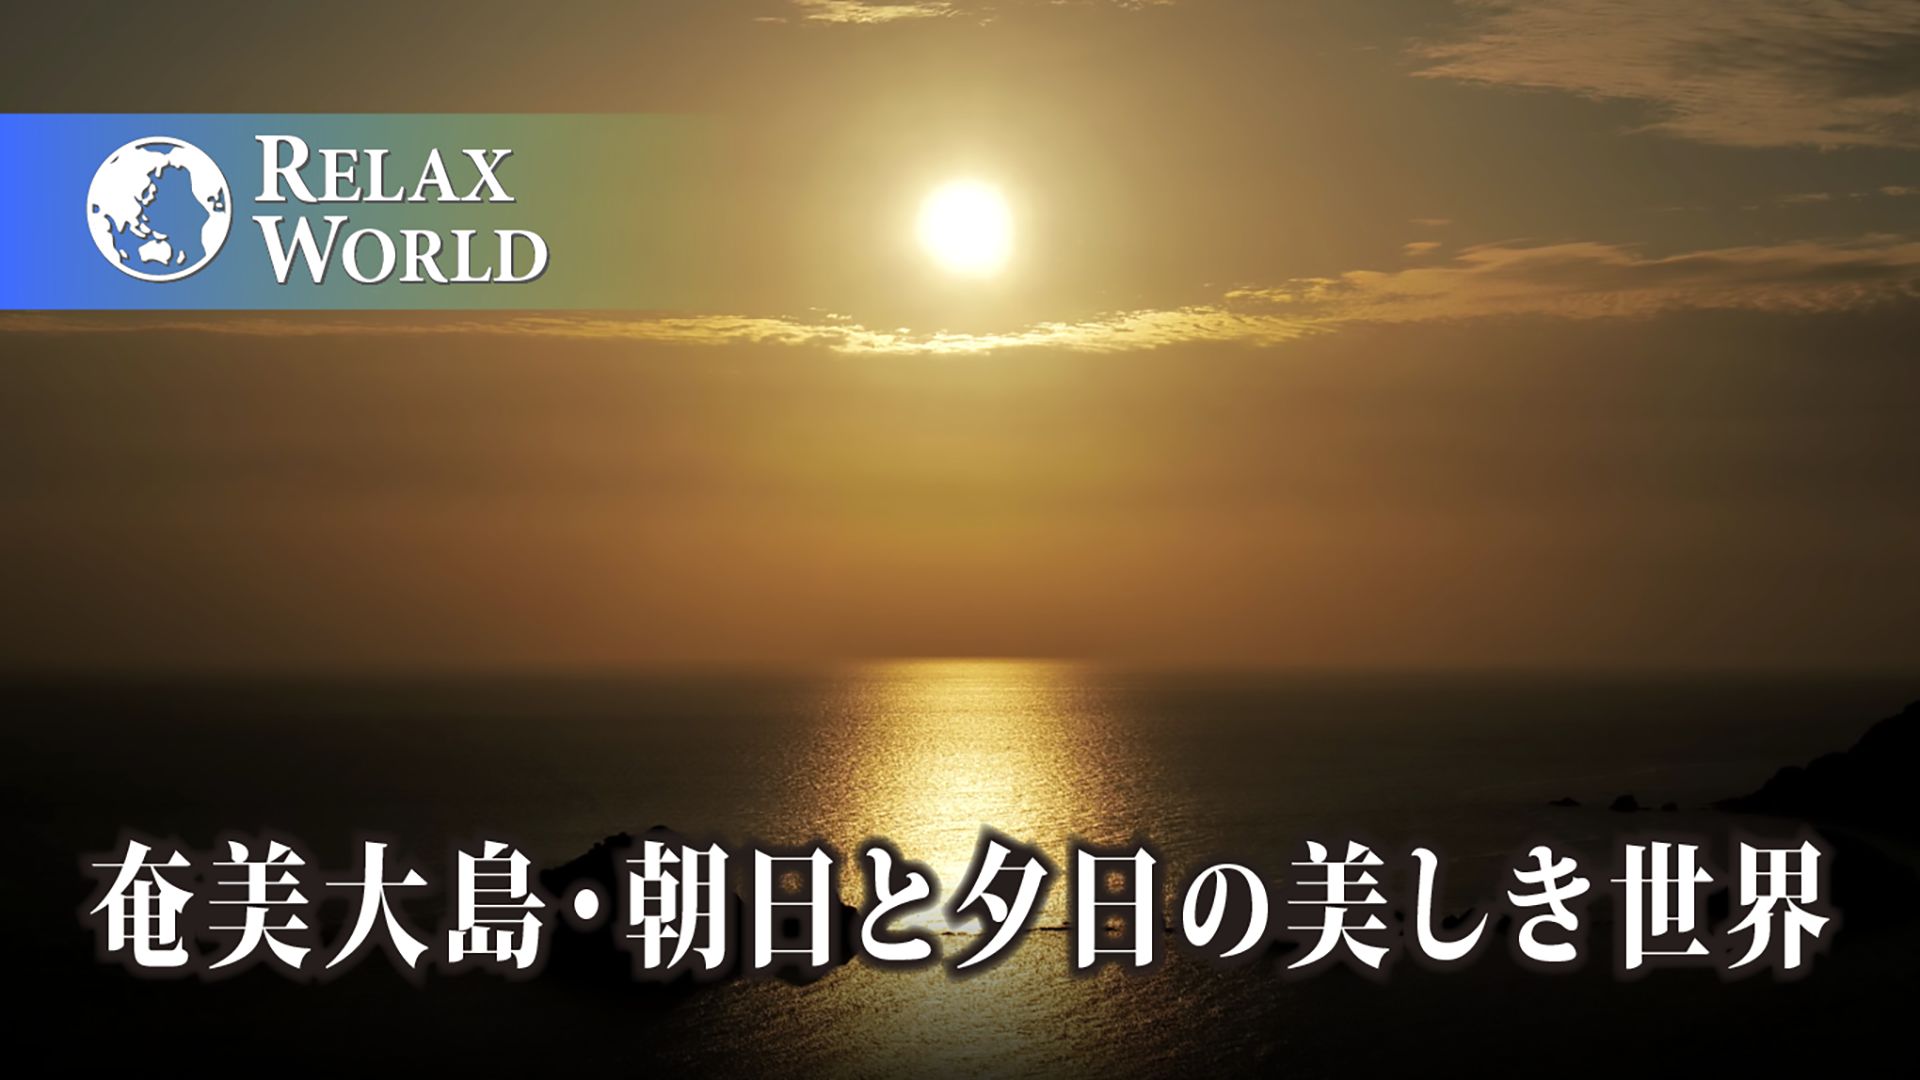 奄美大島・朝日と夕日の美しき世界【RELAX WORLD】